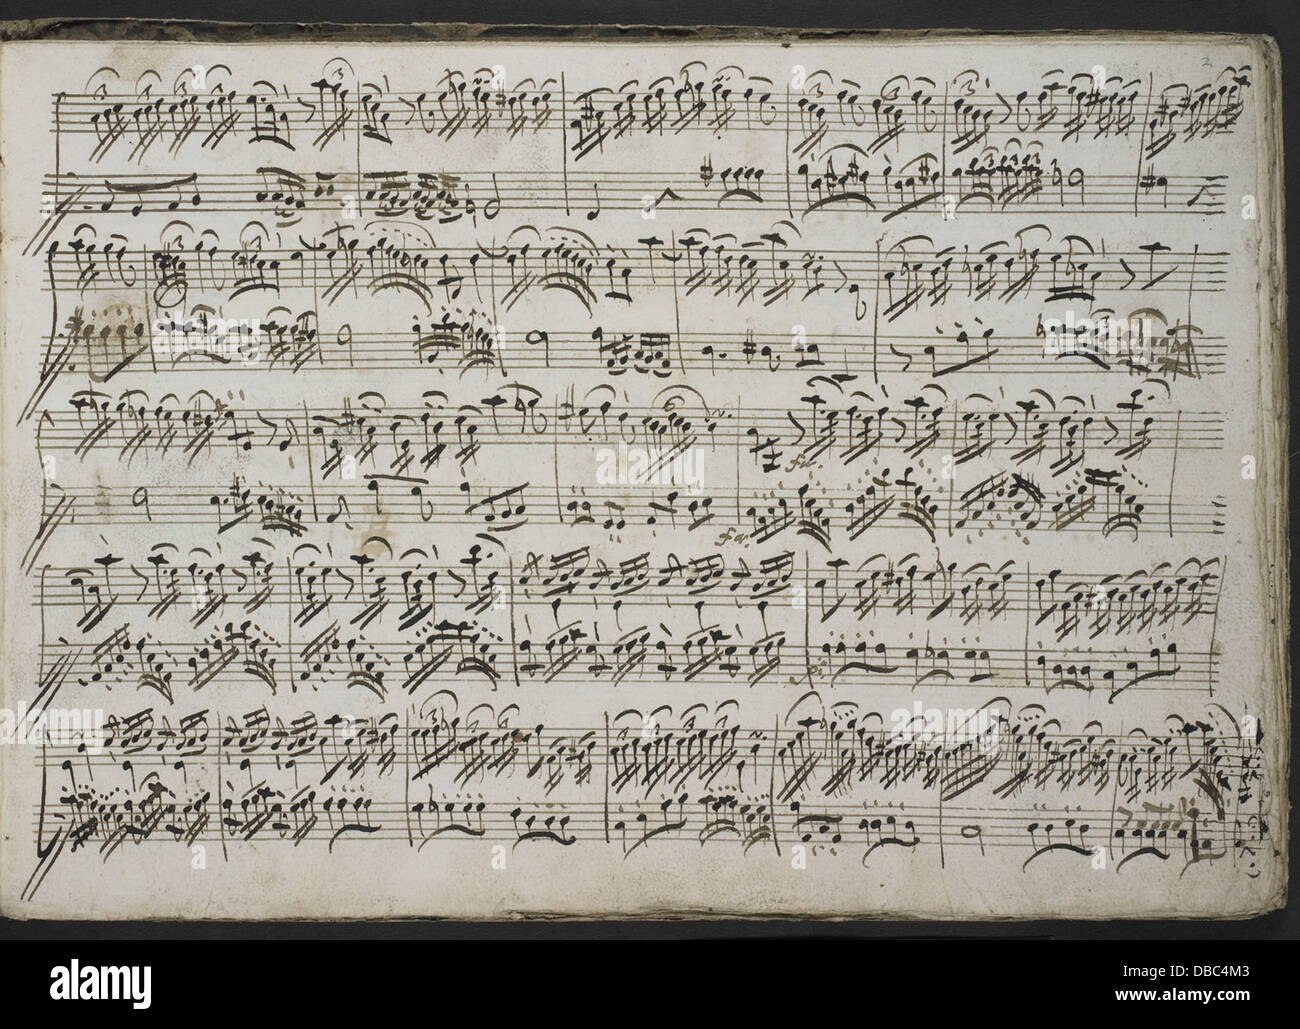 Emanuele Barbella - Sei Sonate C3 A0 violino Solo, C3 A8 Cembalo. (BL Add MS 56102 f. 2r) Stock Photo